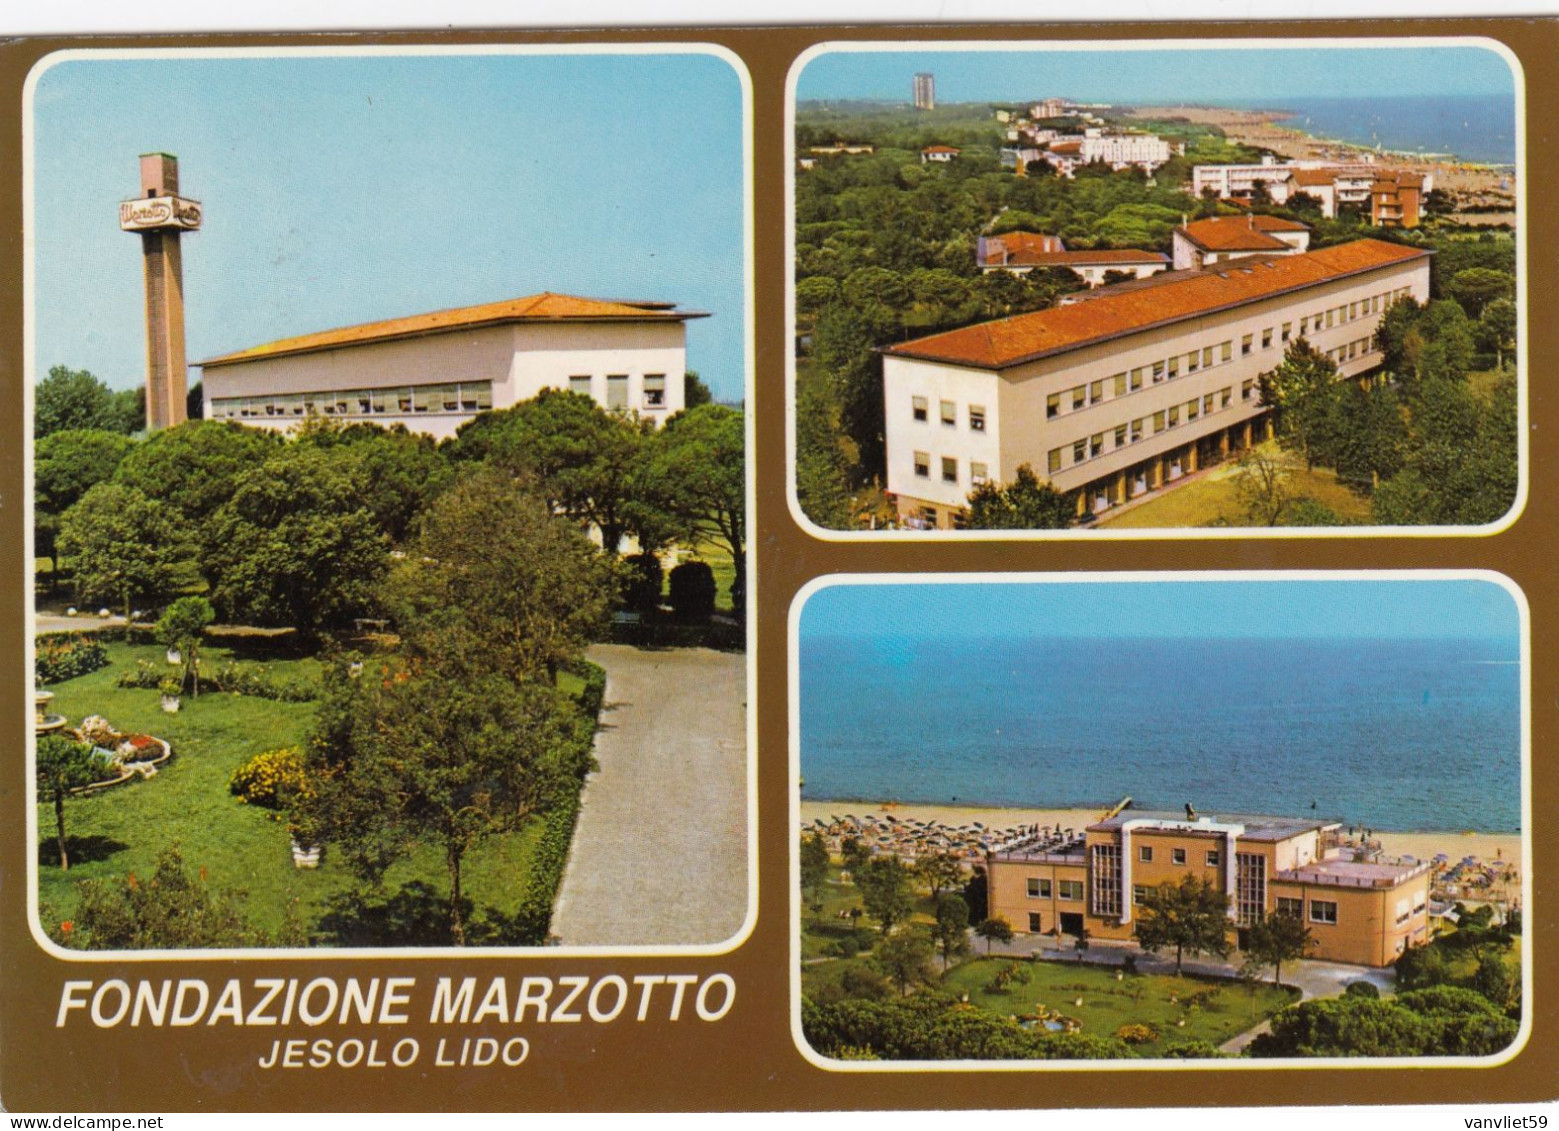 JESOLO LIDO-VENEZIA-FONDAZIONE MARZOTTO-MULTIVEDUTE-CARTOLINA VERA FOTOGRAFIA-VIAGGIATA IL 29-7-1983 - Venezia (Venedig)